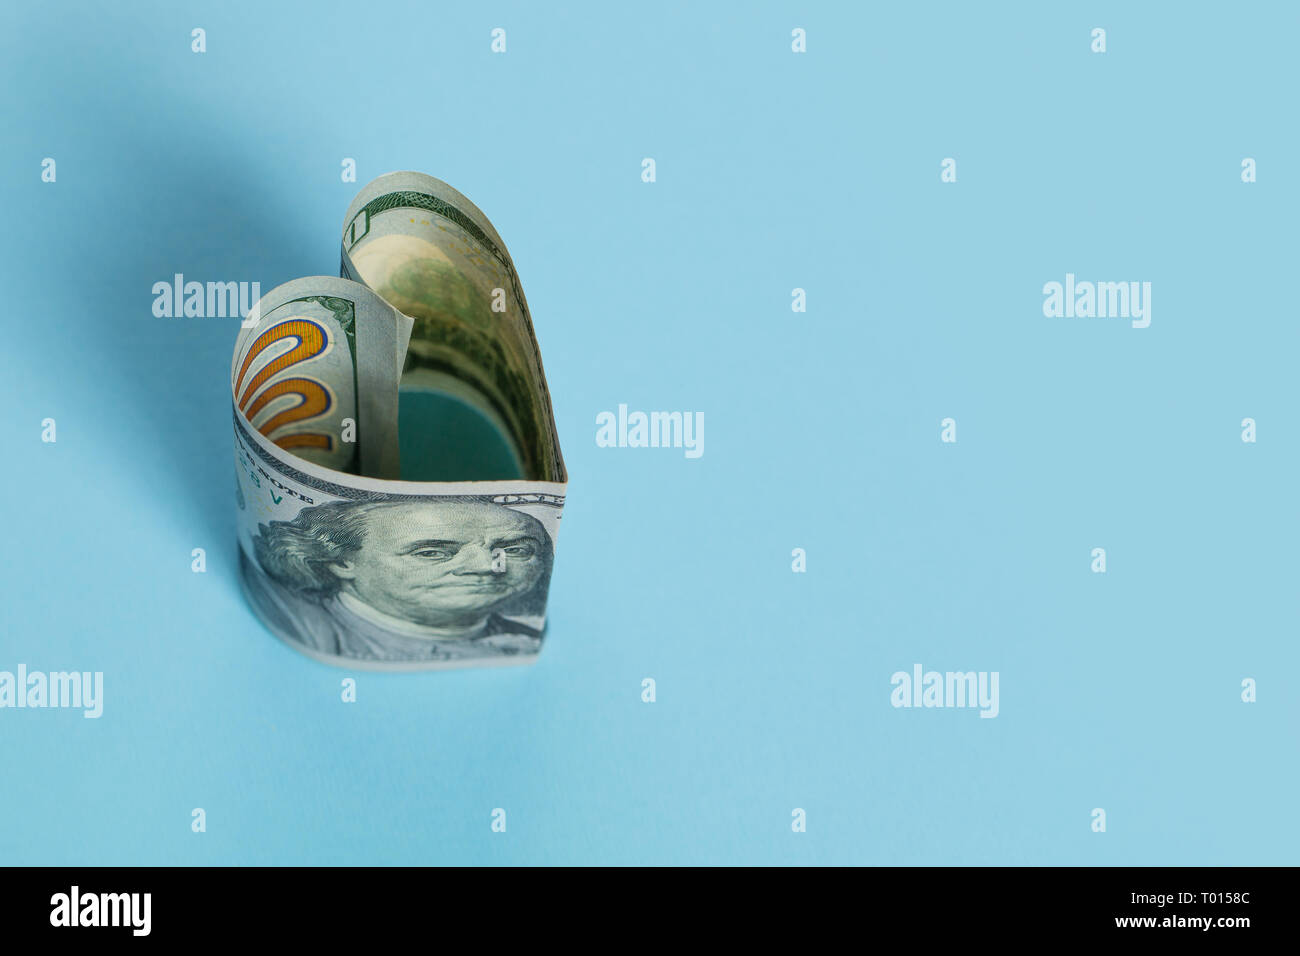 US Dollar cash Geld banknote Herzform auf blauem Hintergrund, Darlehen und kommerzielle Geldanlage gewinn Konzept Stockfoto